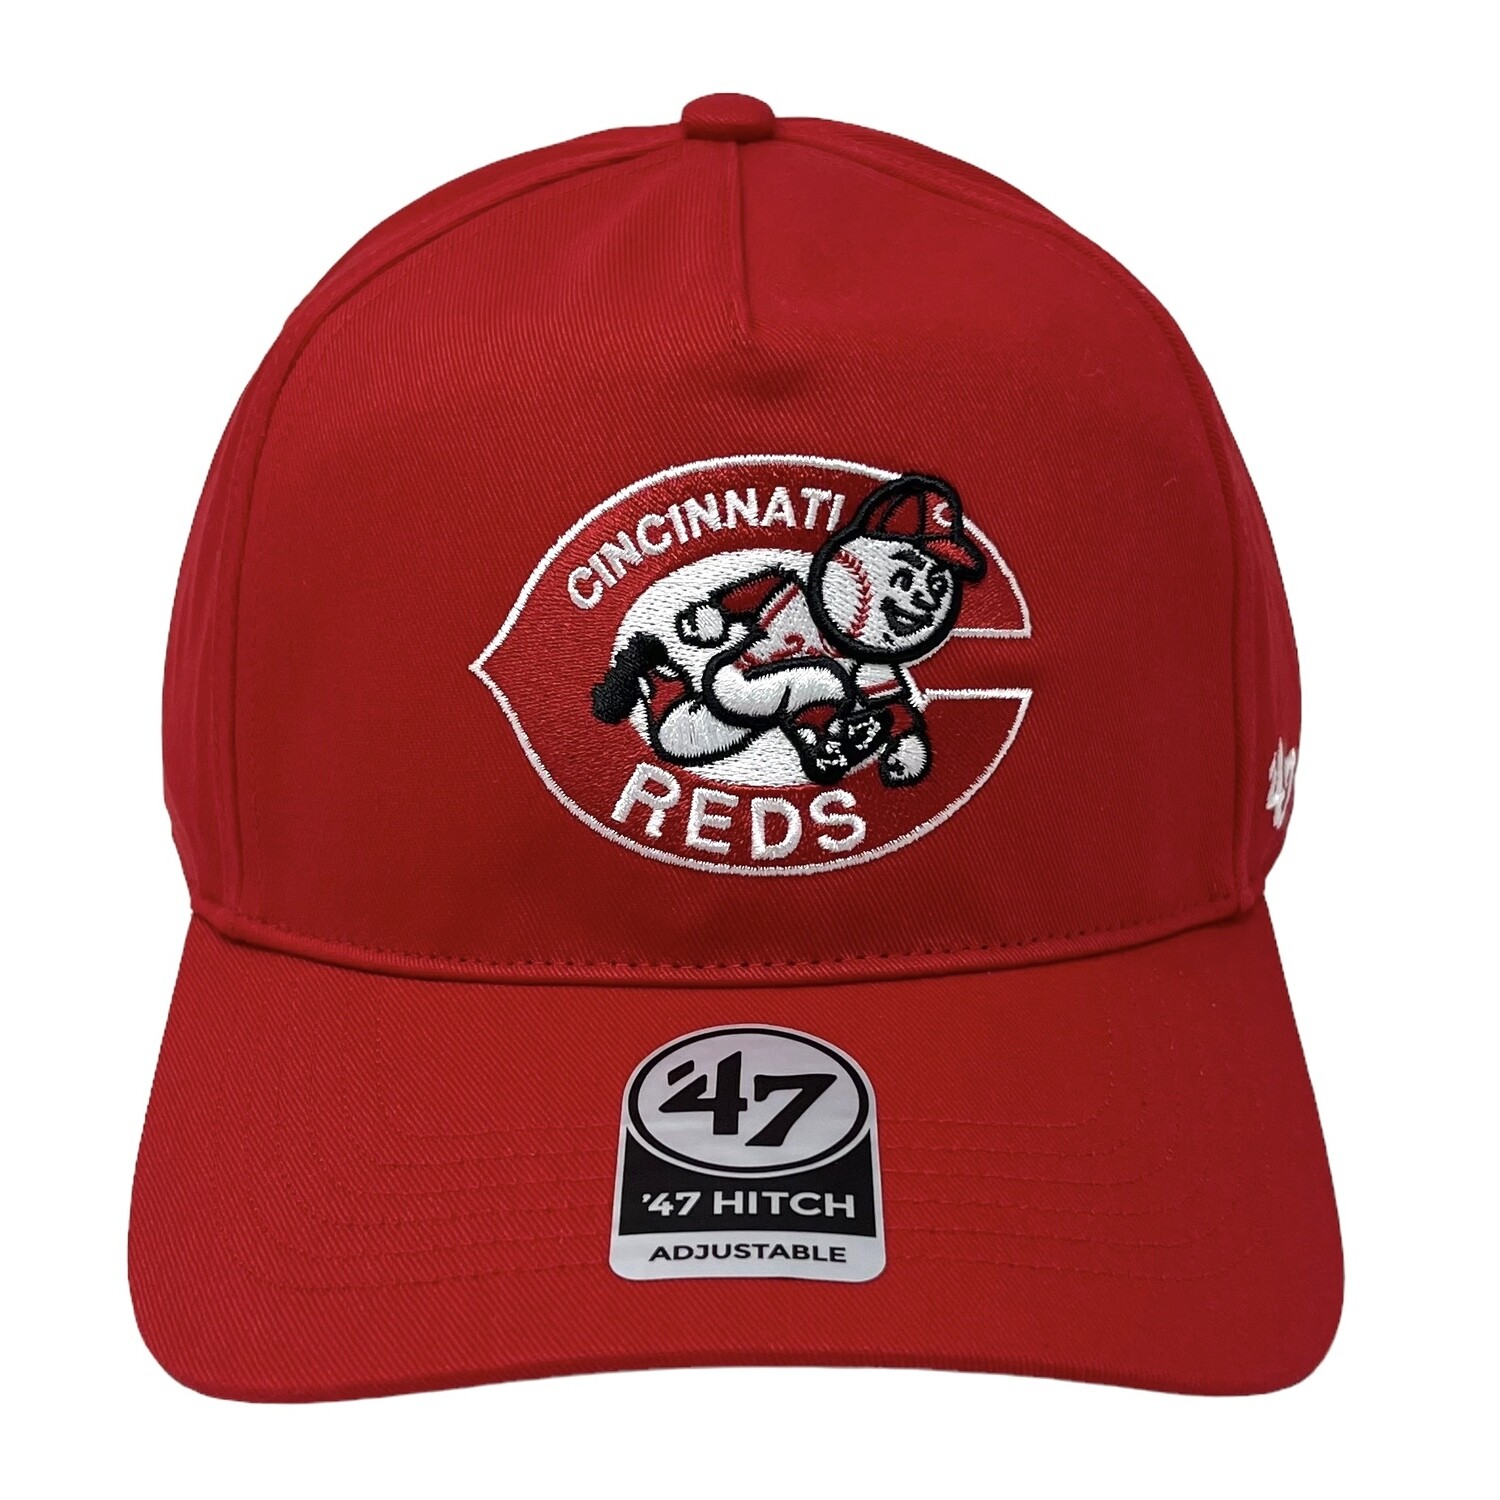 Cincinnati Reds Men's 47 Hitch Adjustable Hat